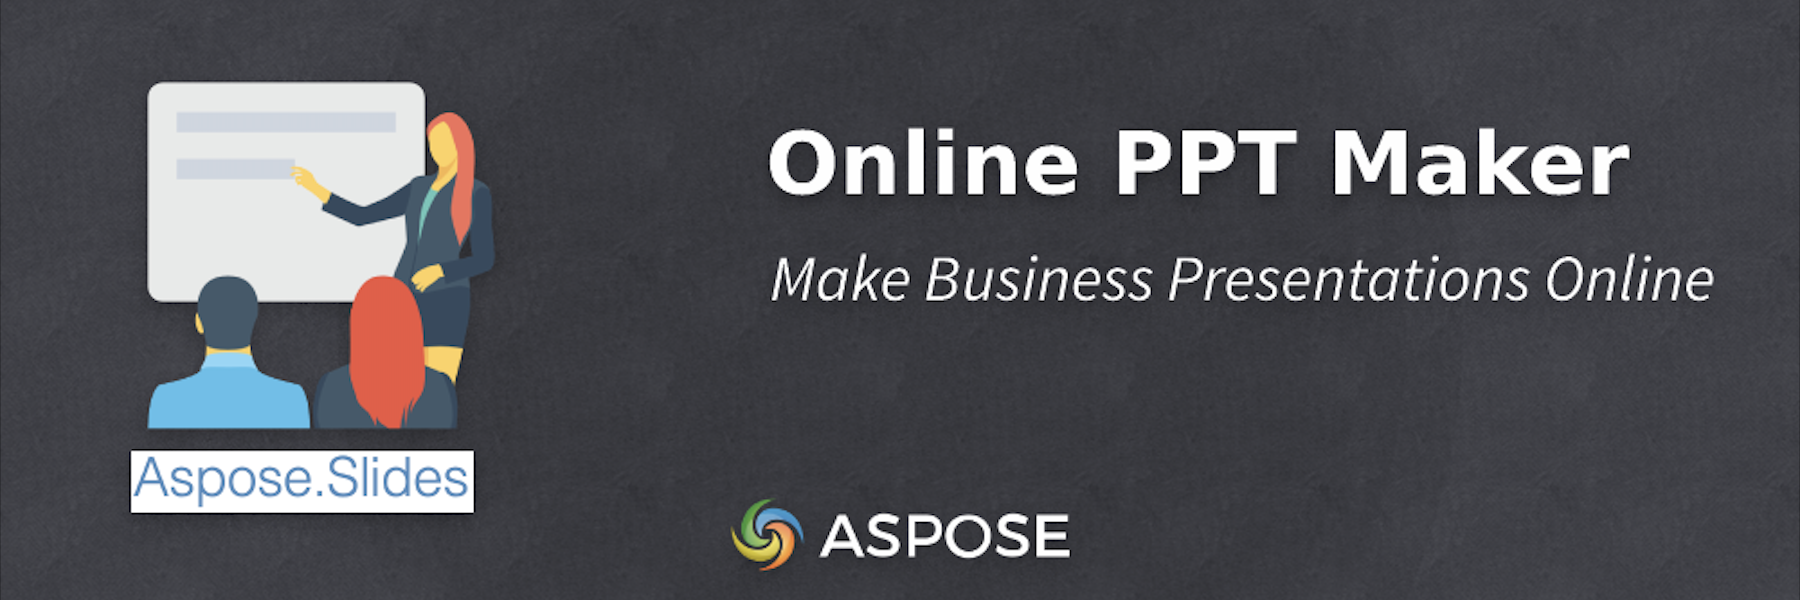 Online PPT Maker - Faça apresentações de negócios online